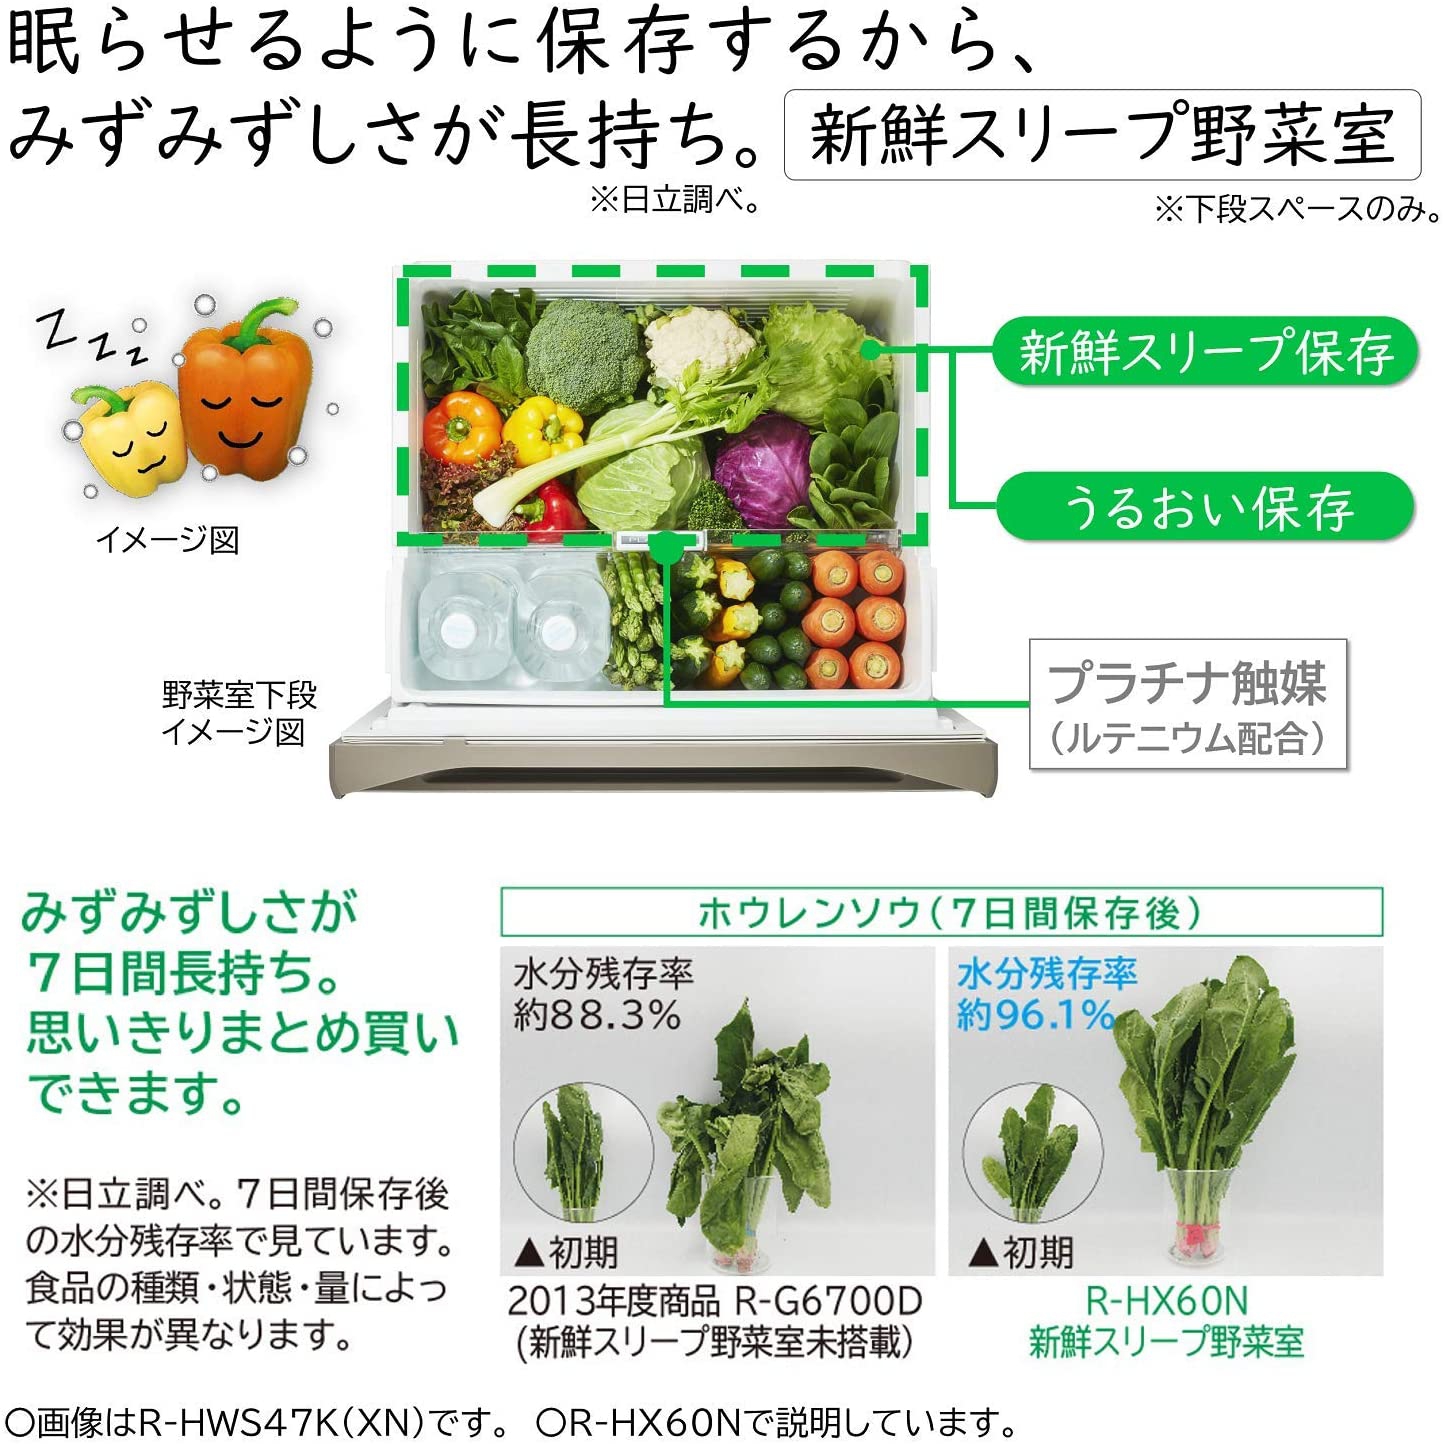 日立(HITACHI) 冷蔵庫 R-HWS47Nの商品画像6 